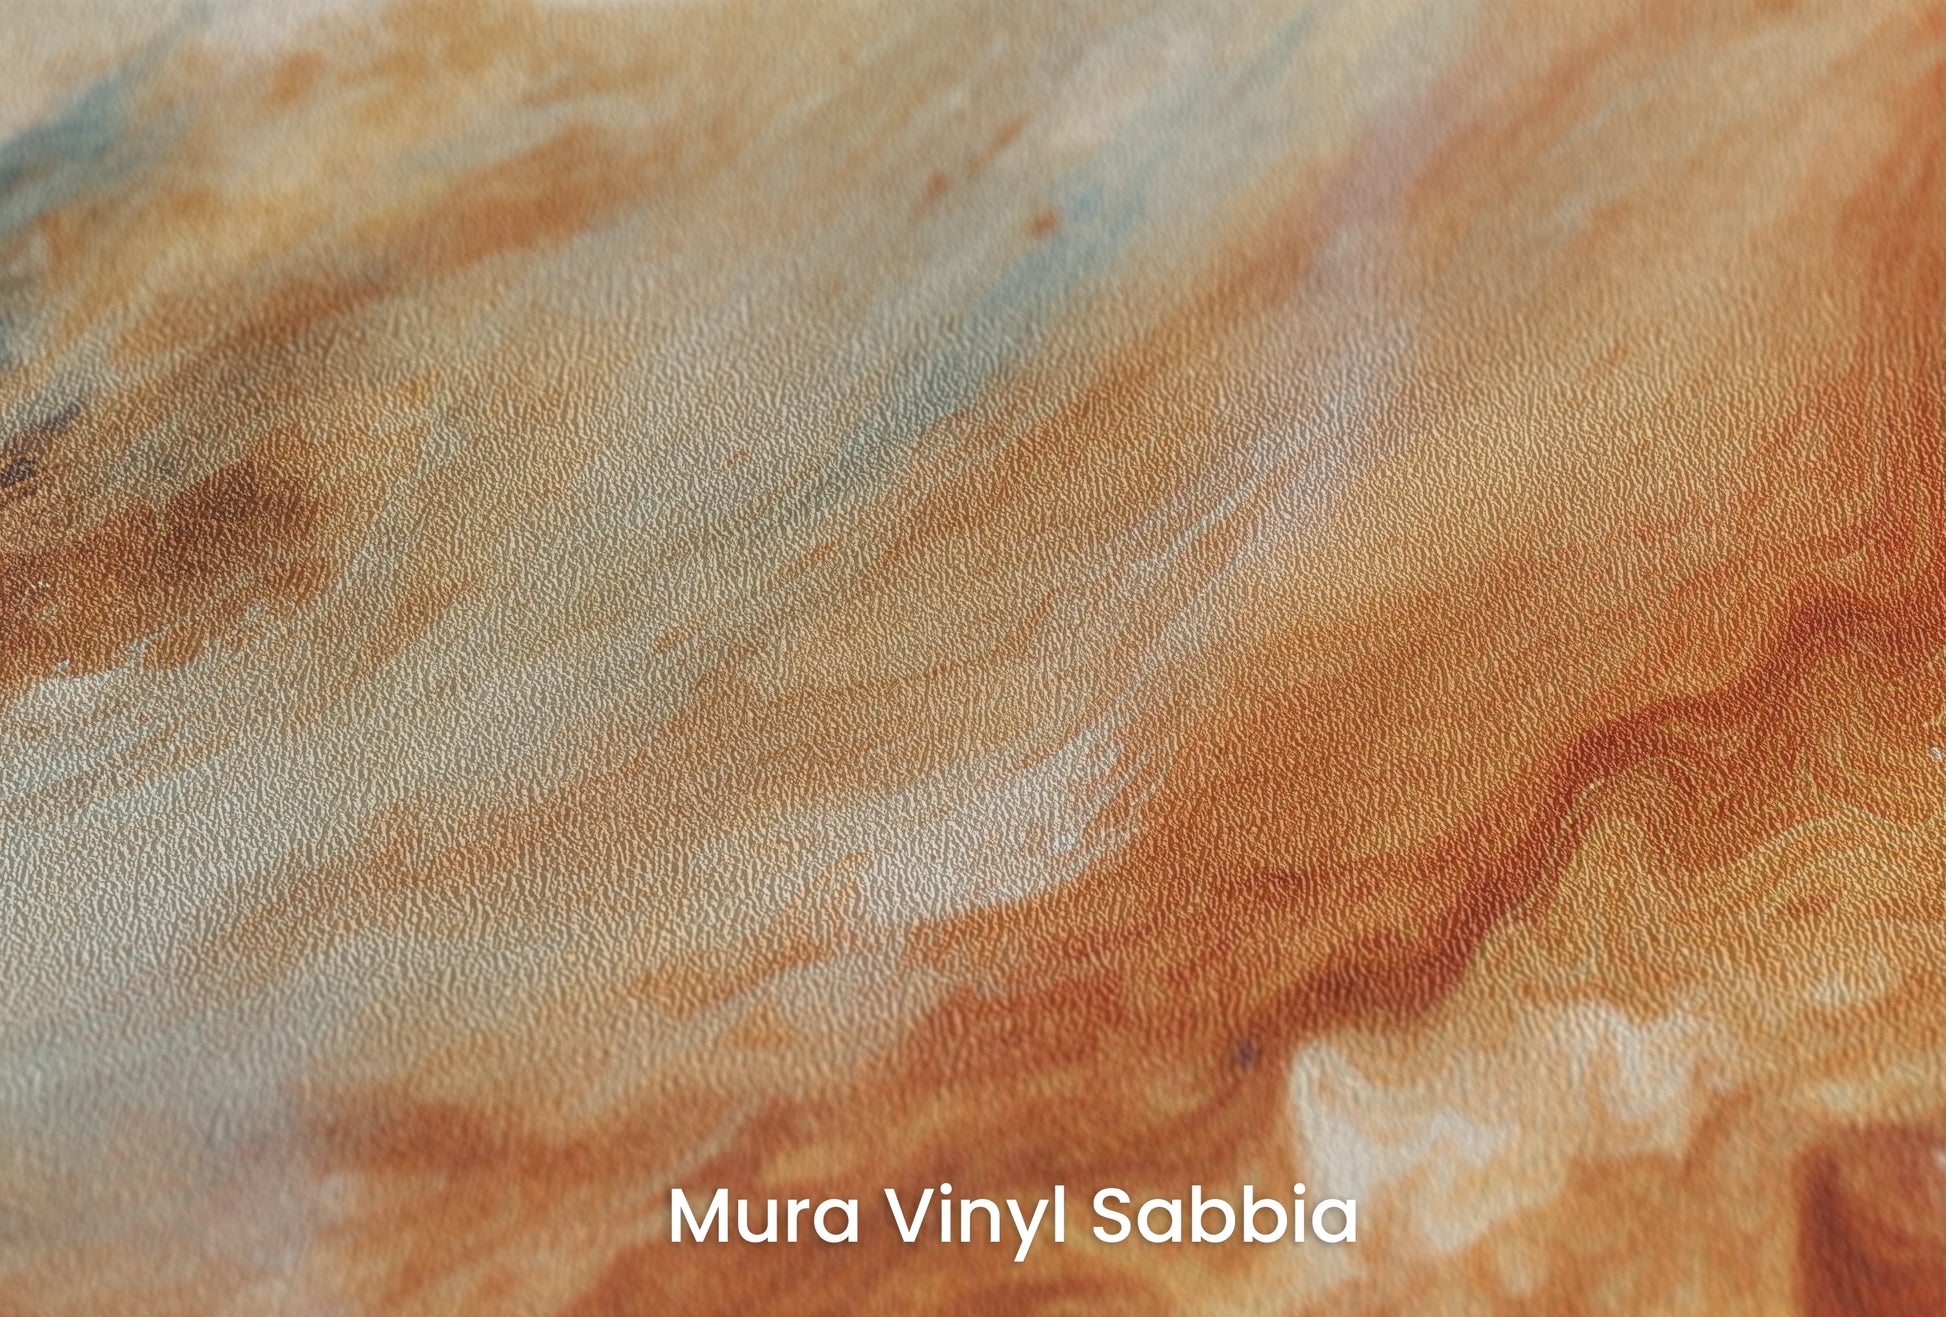 Zbliżenie na artystyczną fototapetę o nazwie Jupiter's Glow na podłożu Mura Vinyl Sabbia struktura grubego ziarna piasku.